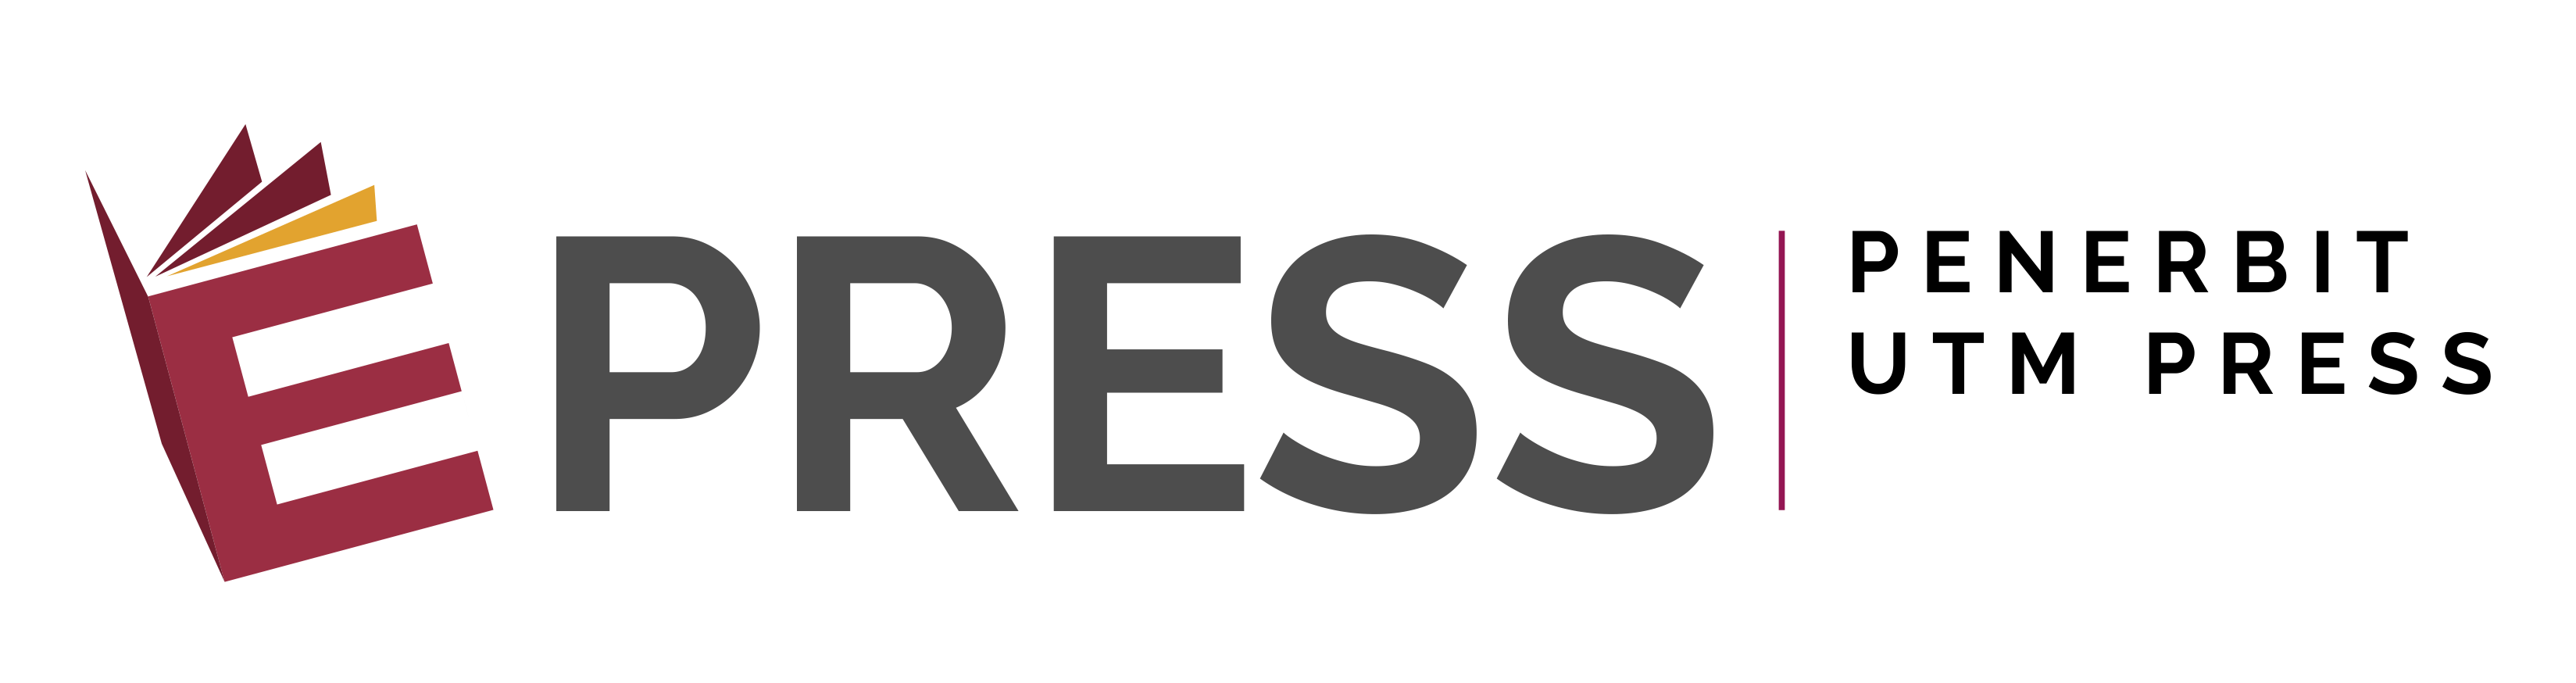 UTM Logo - Penerbit UTM Press